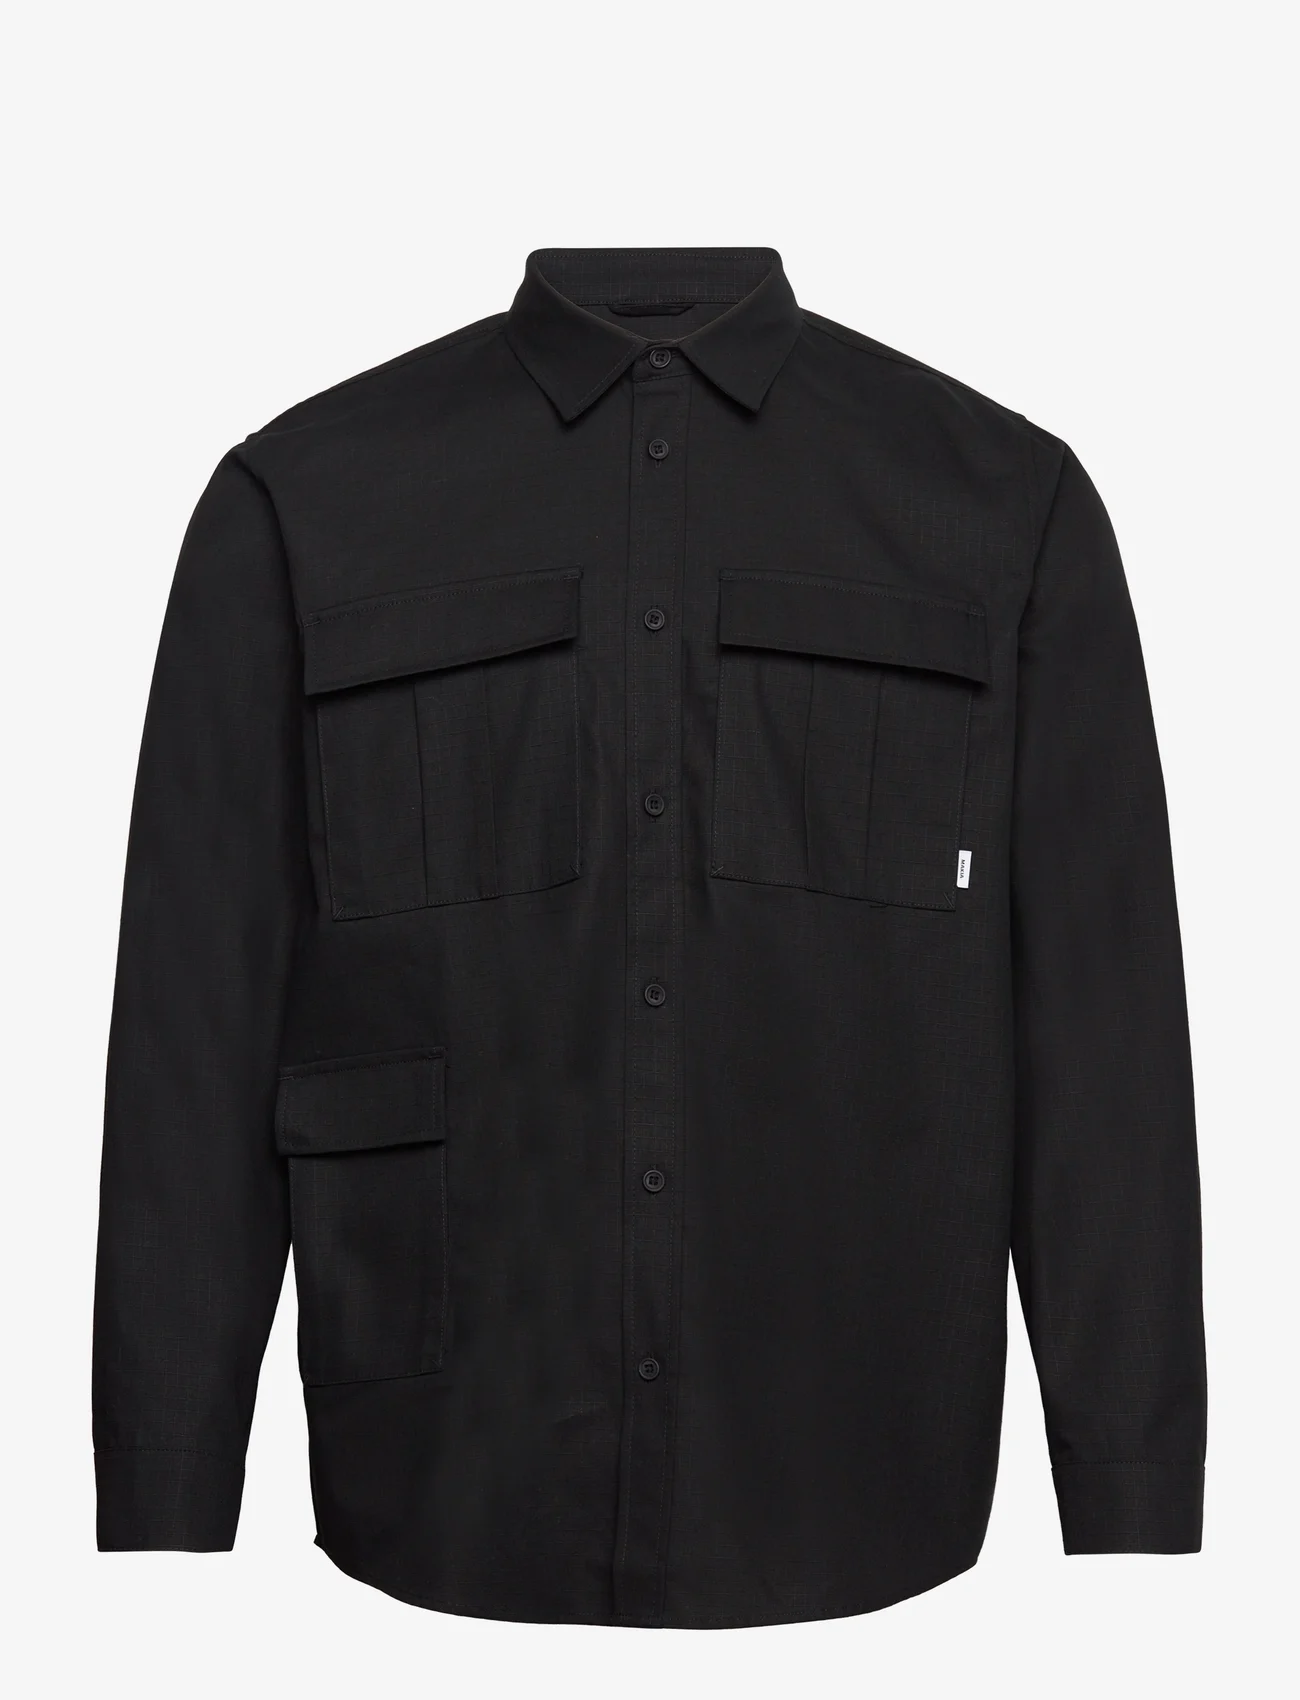 Makia - Thule Shirt - basic shirts - black - 0